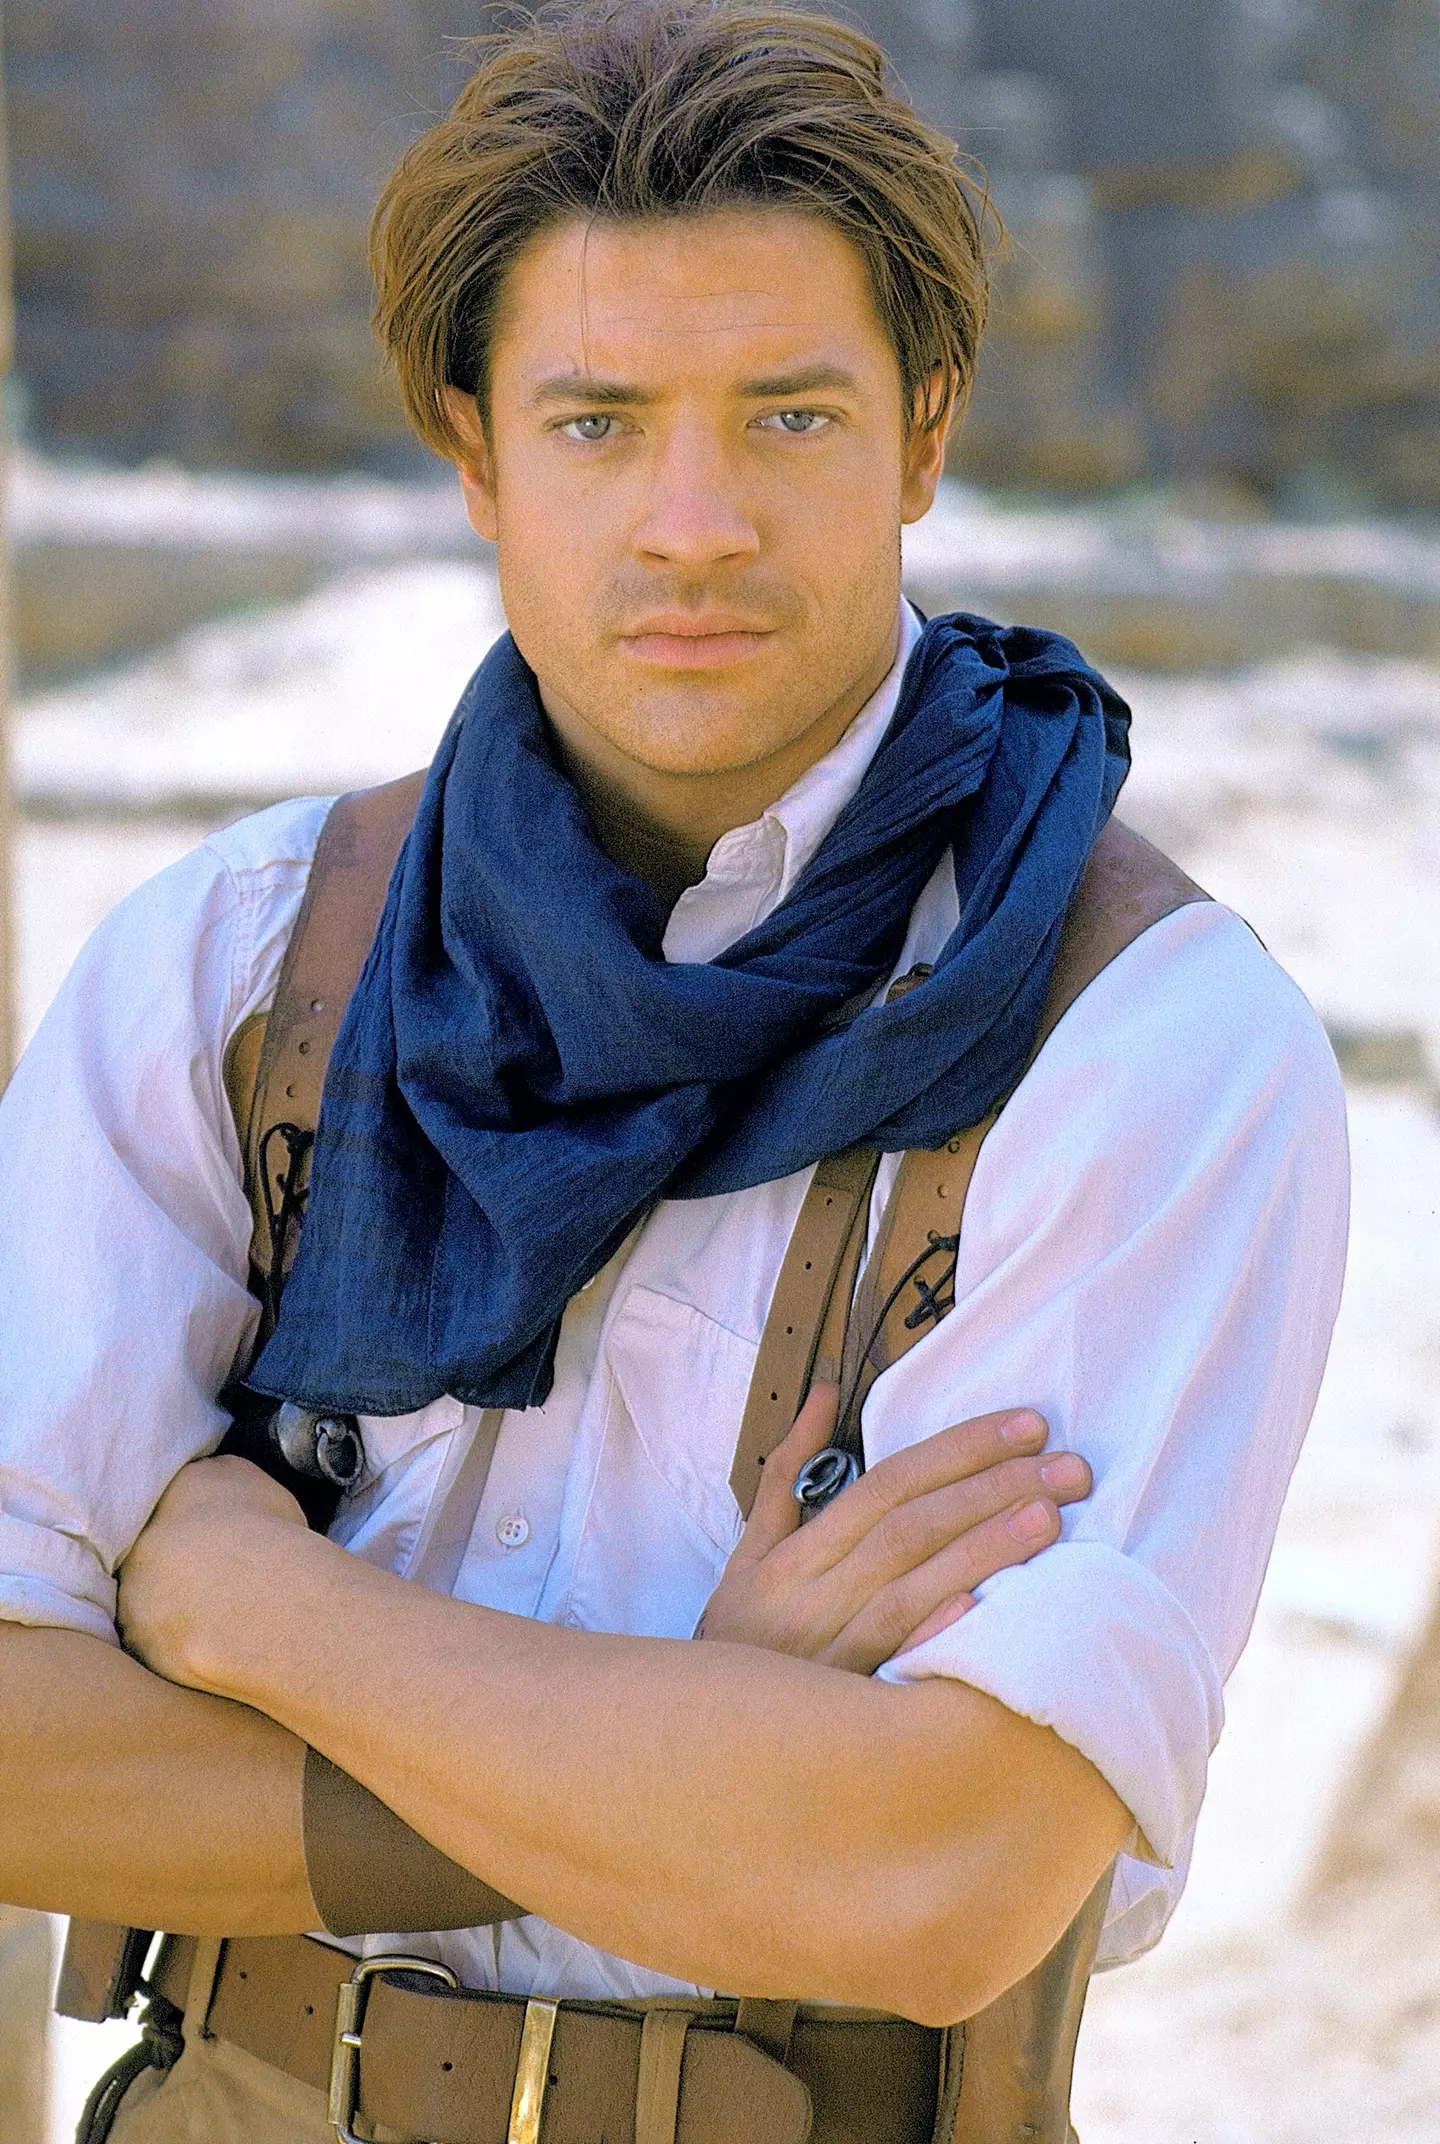 Fraser rose to fame in the original 1999 film.